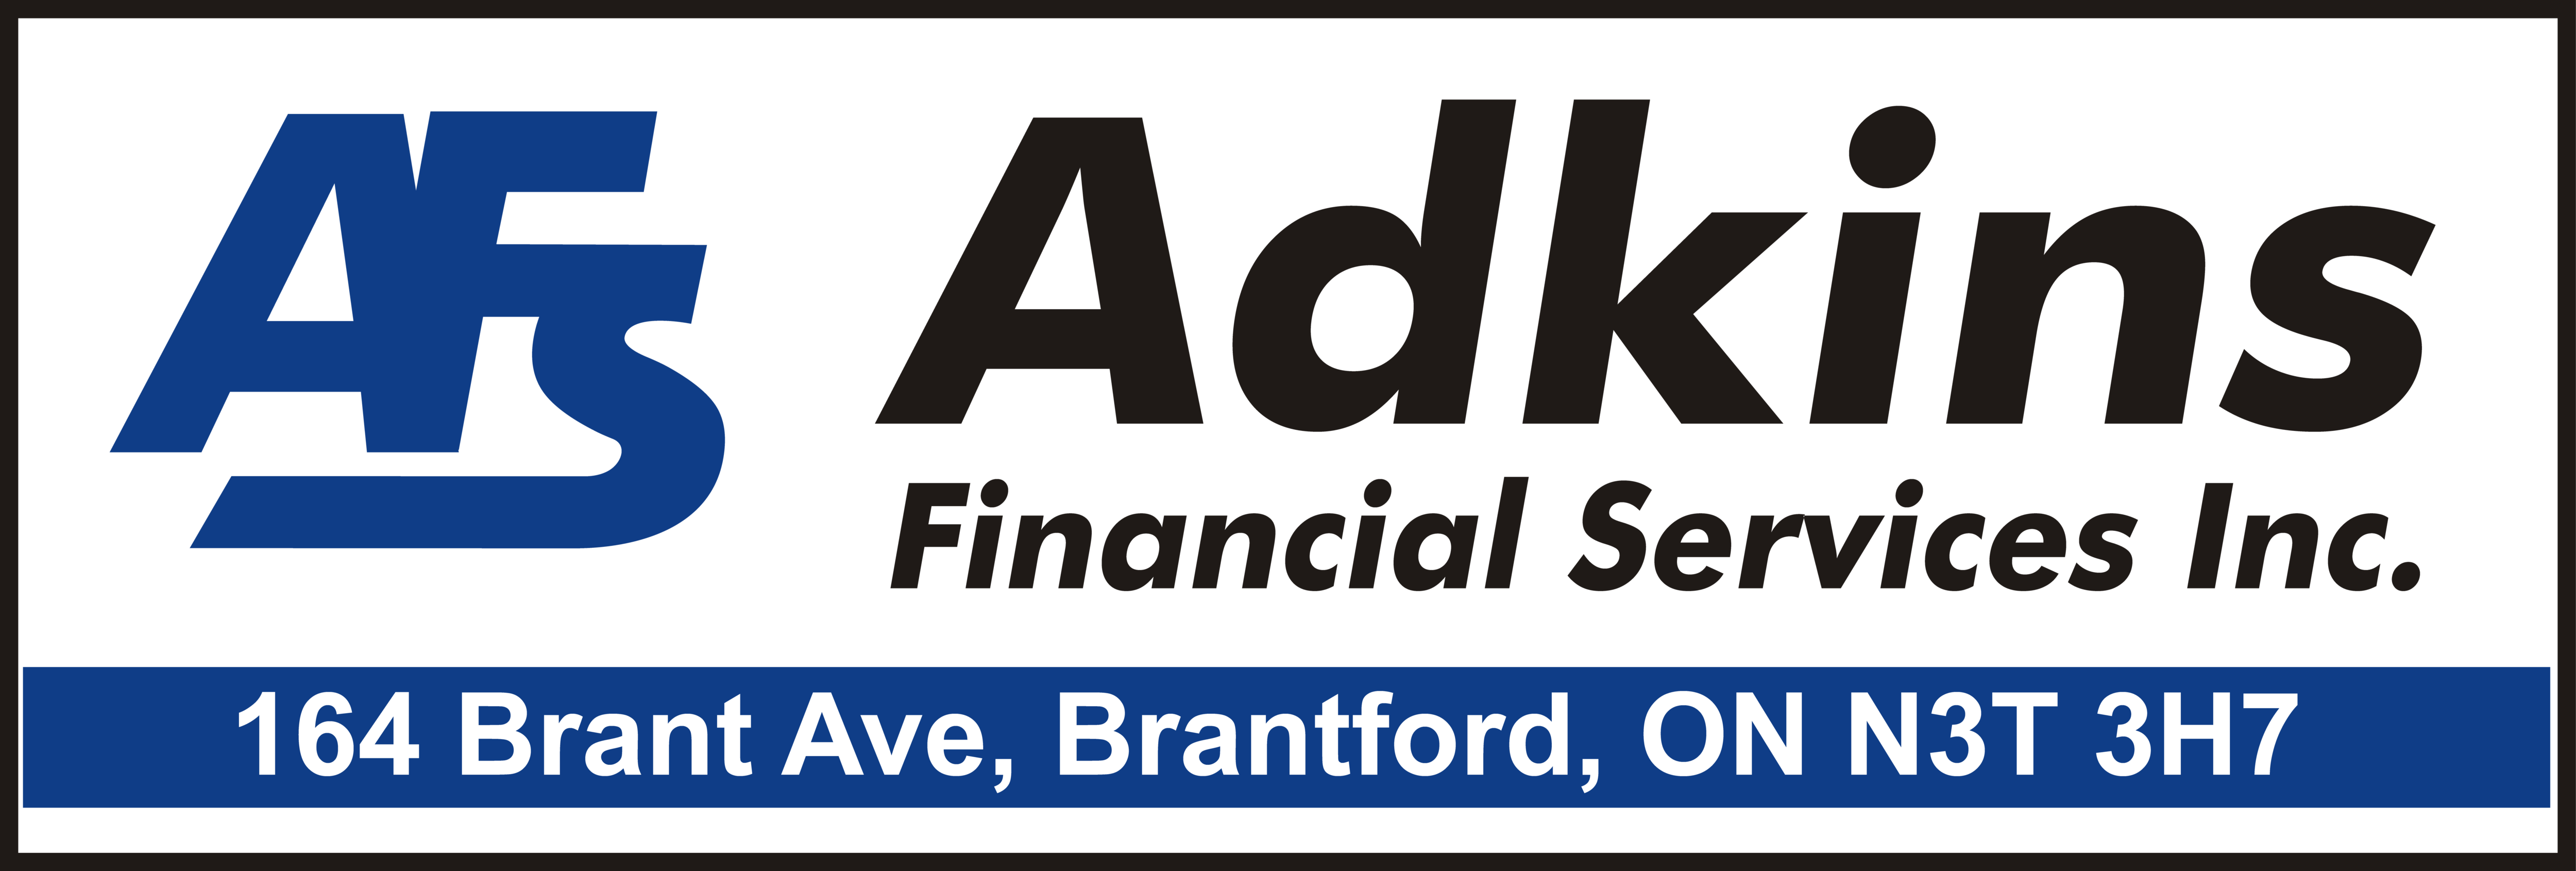 Adkins Financials Services